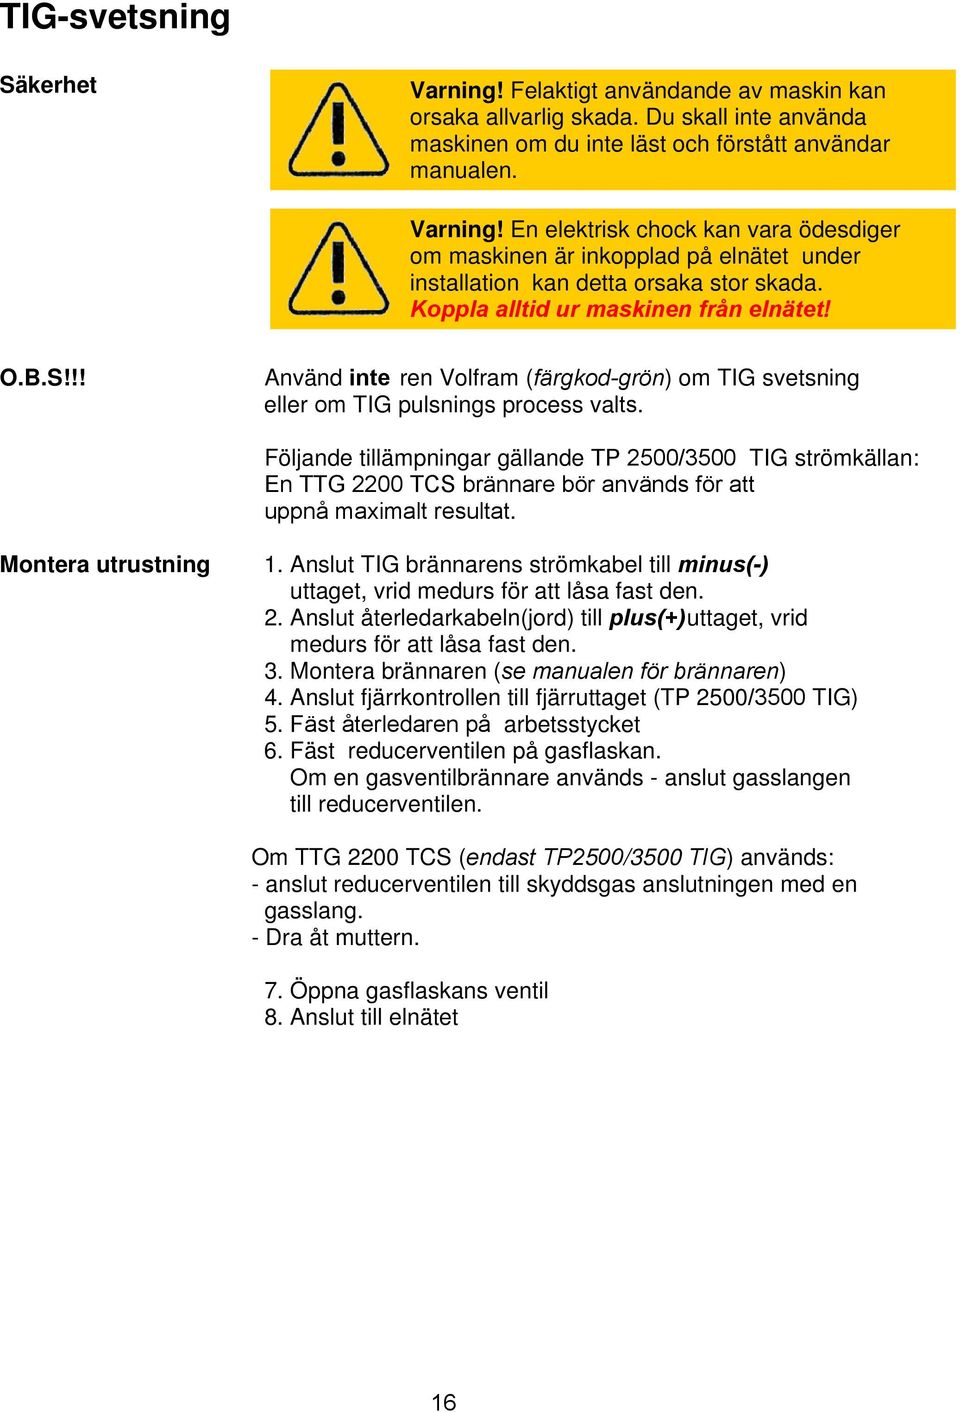 Följande tillämpningar gällande TP 2500/3500 TIG strömkällan: En TTG 2200 TCS brännare bör används för att uppnå maximalt resultat. Montera utrustning 1.